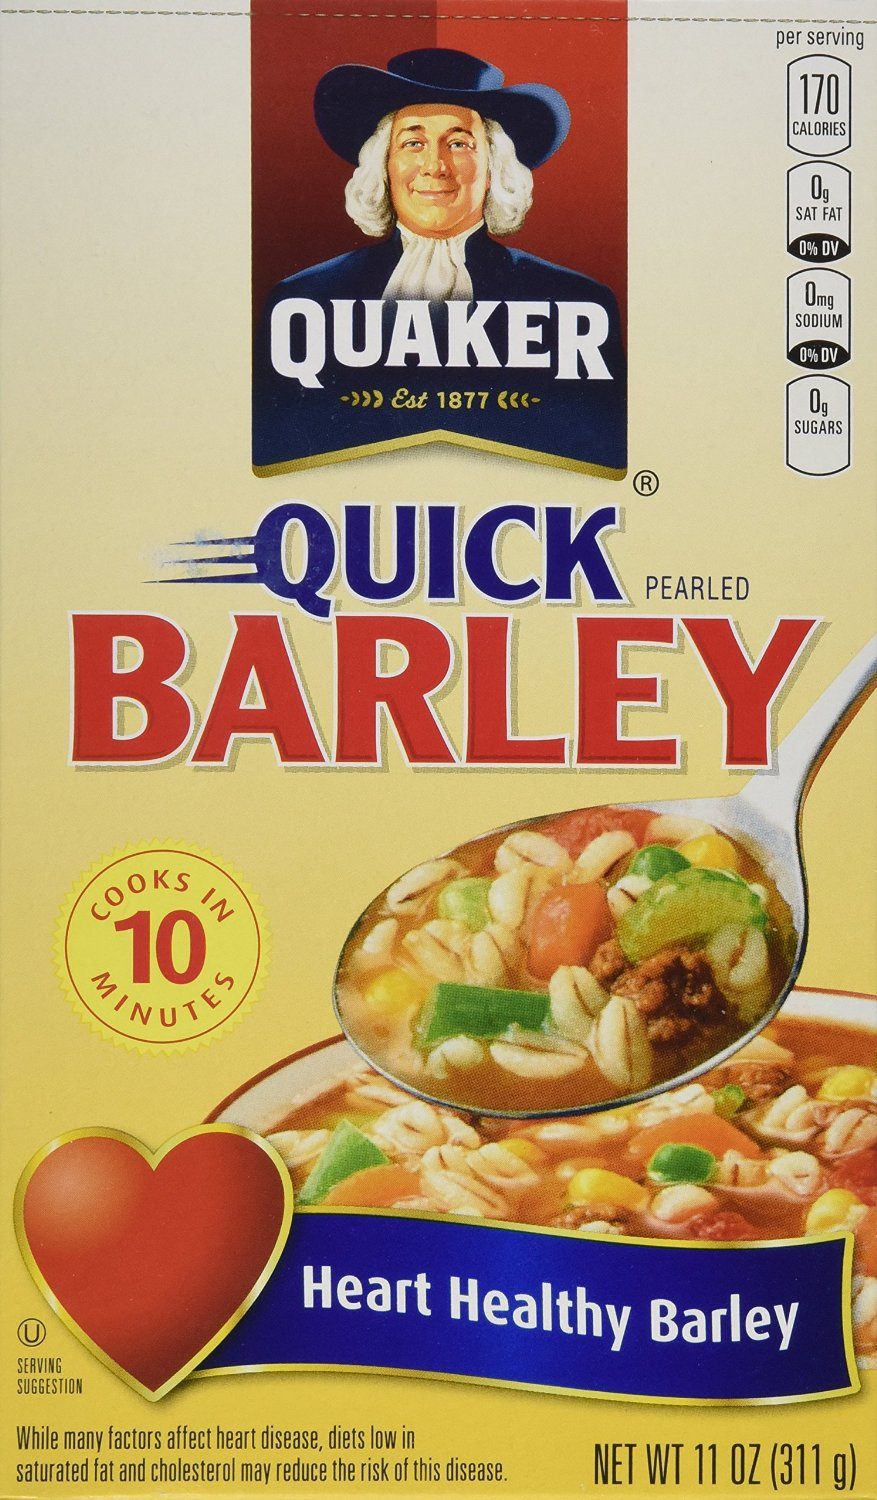 Quaker Quick Barley